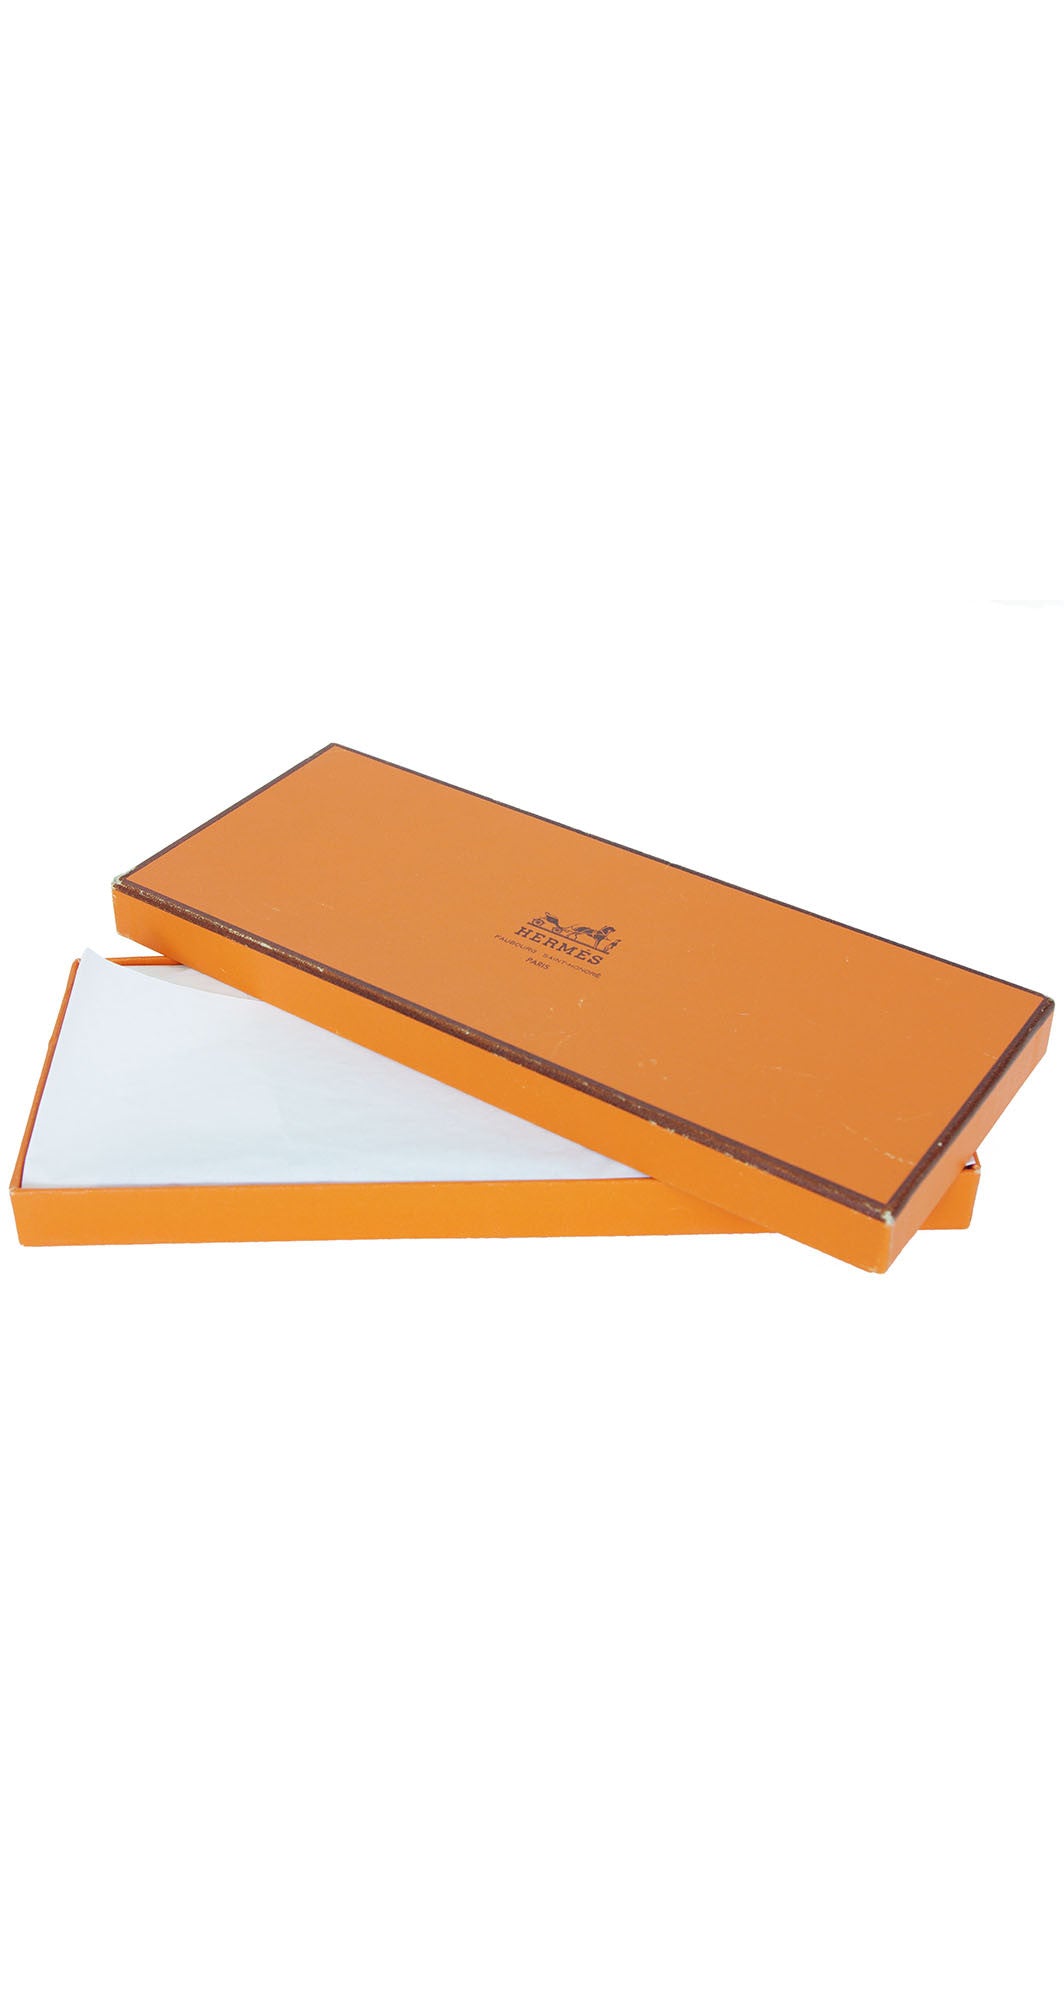 VINTAGE Orange Hermes Box Hermes Scarf Box Hermes Paris 